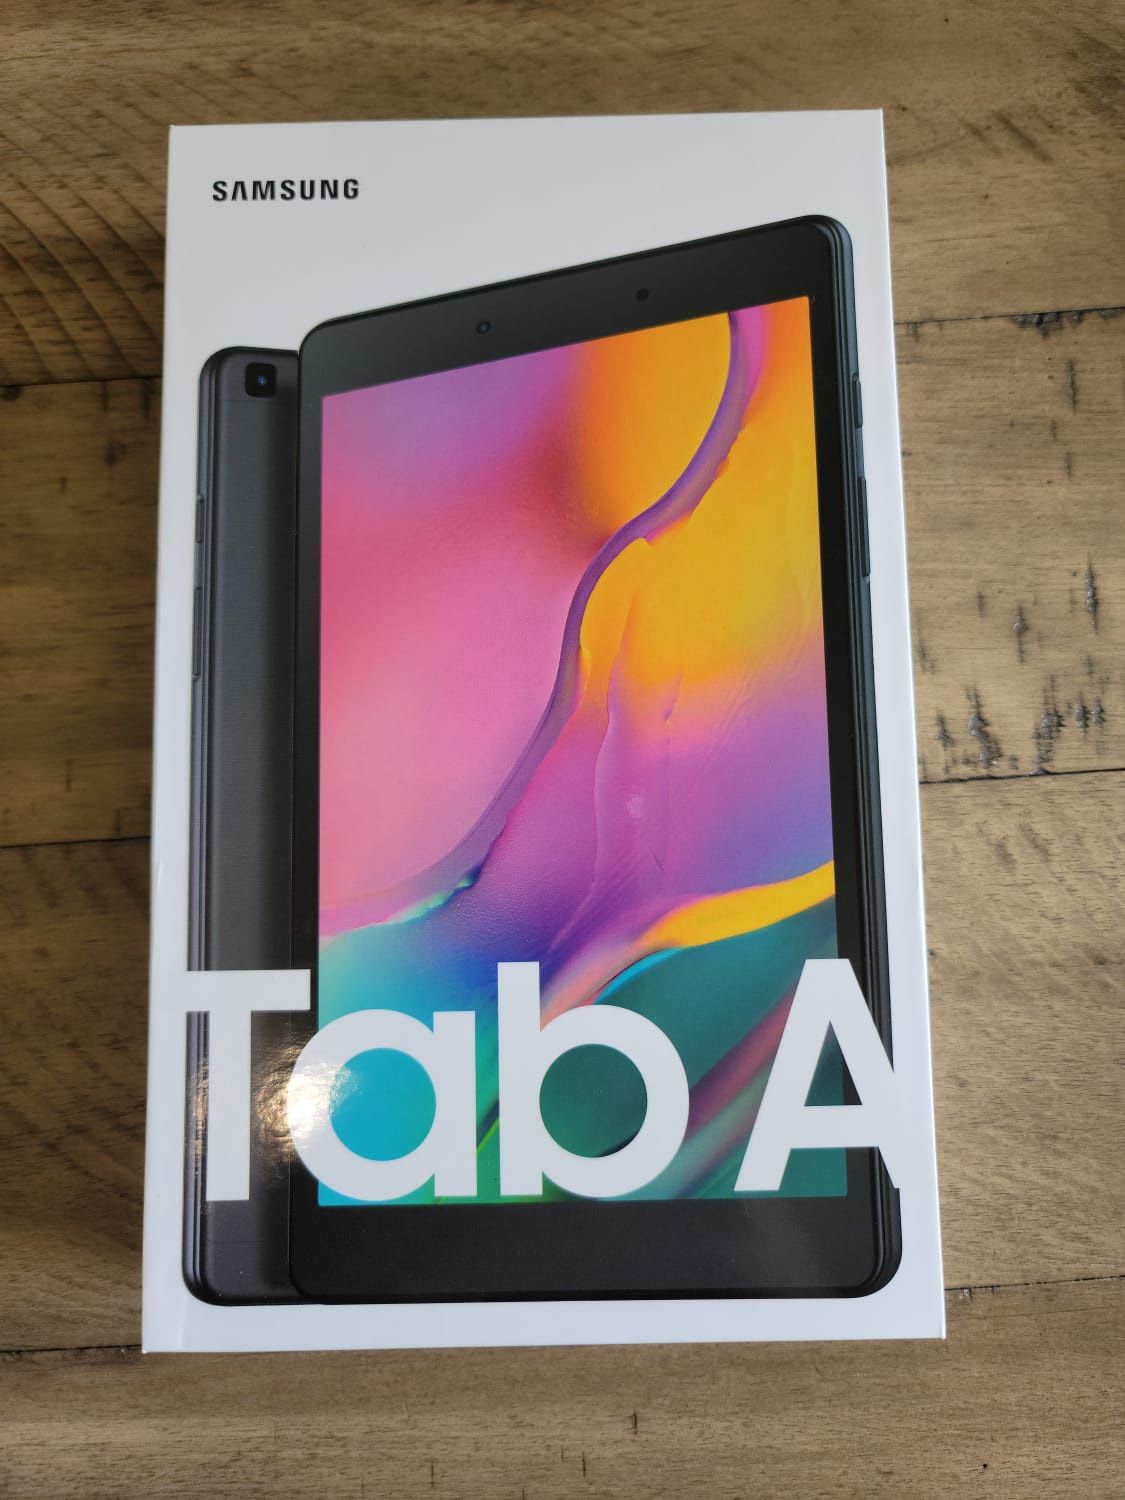 Samsung - Galaxy Tab A (Latest Model) - 8" - 32GB - Black